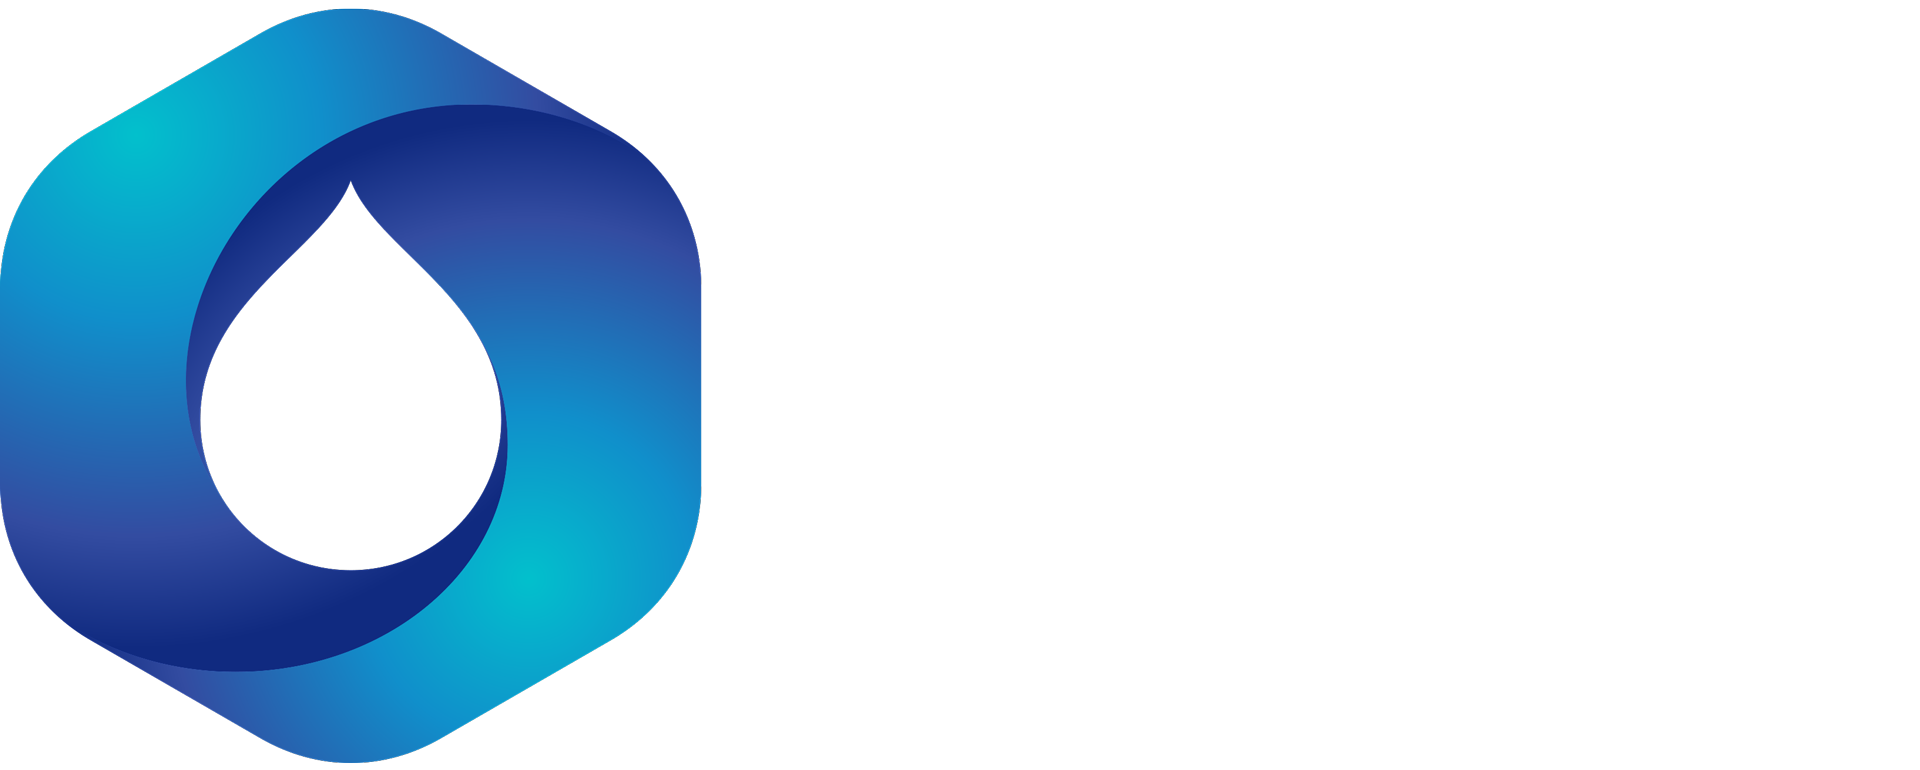 Enterprise Lubricants